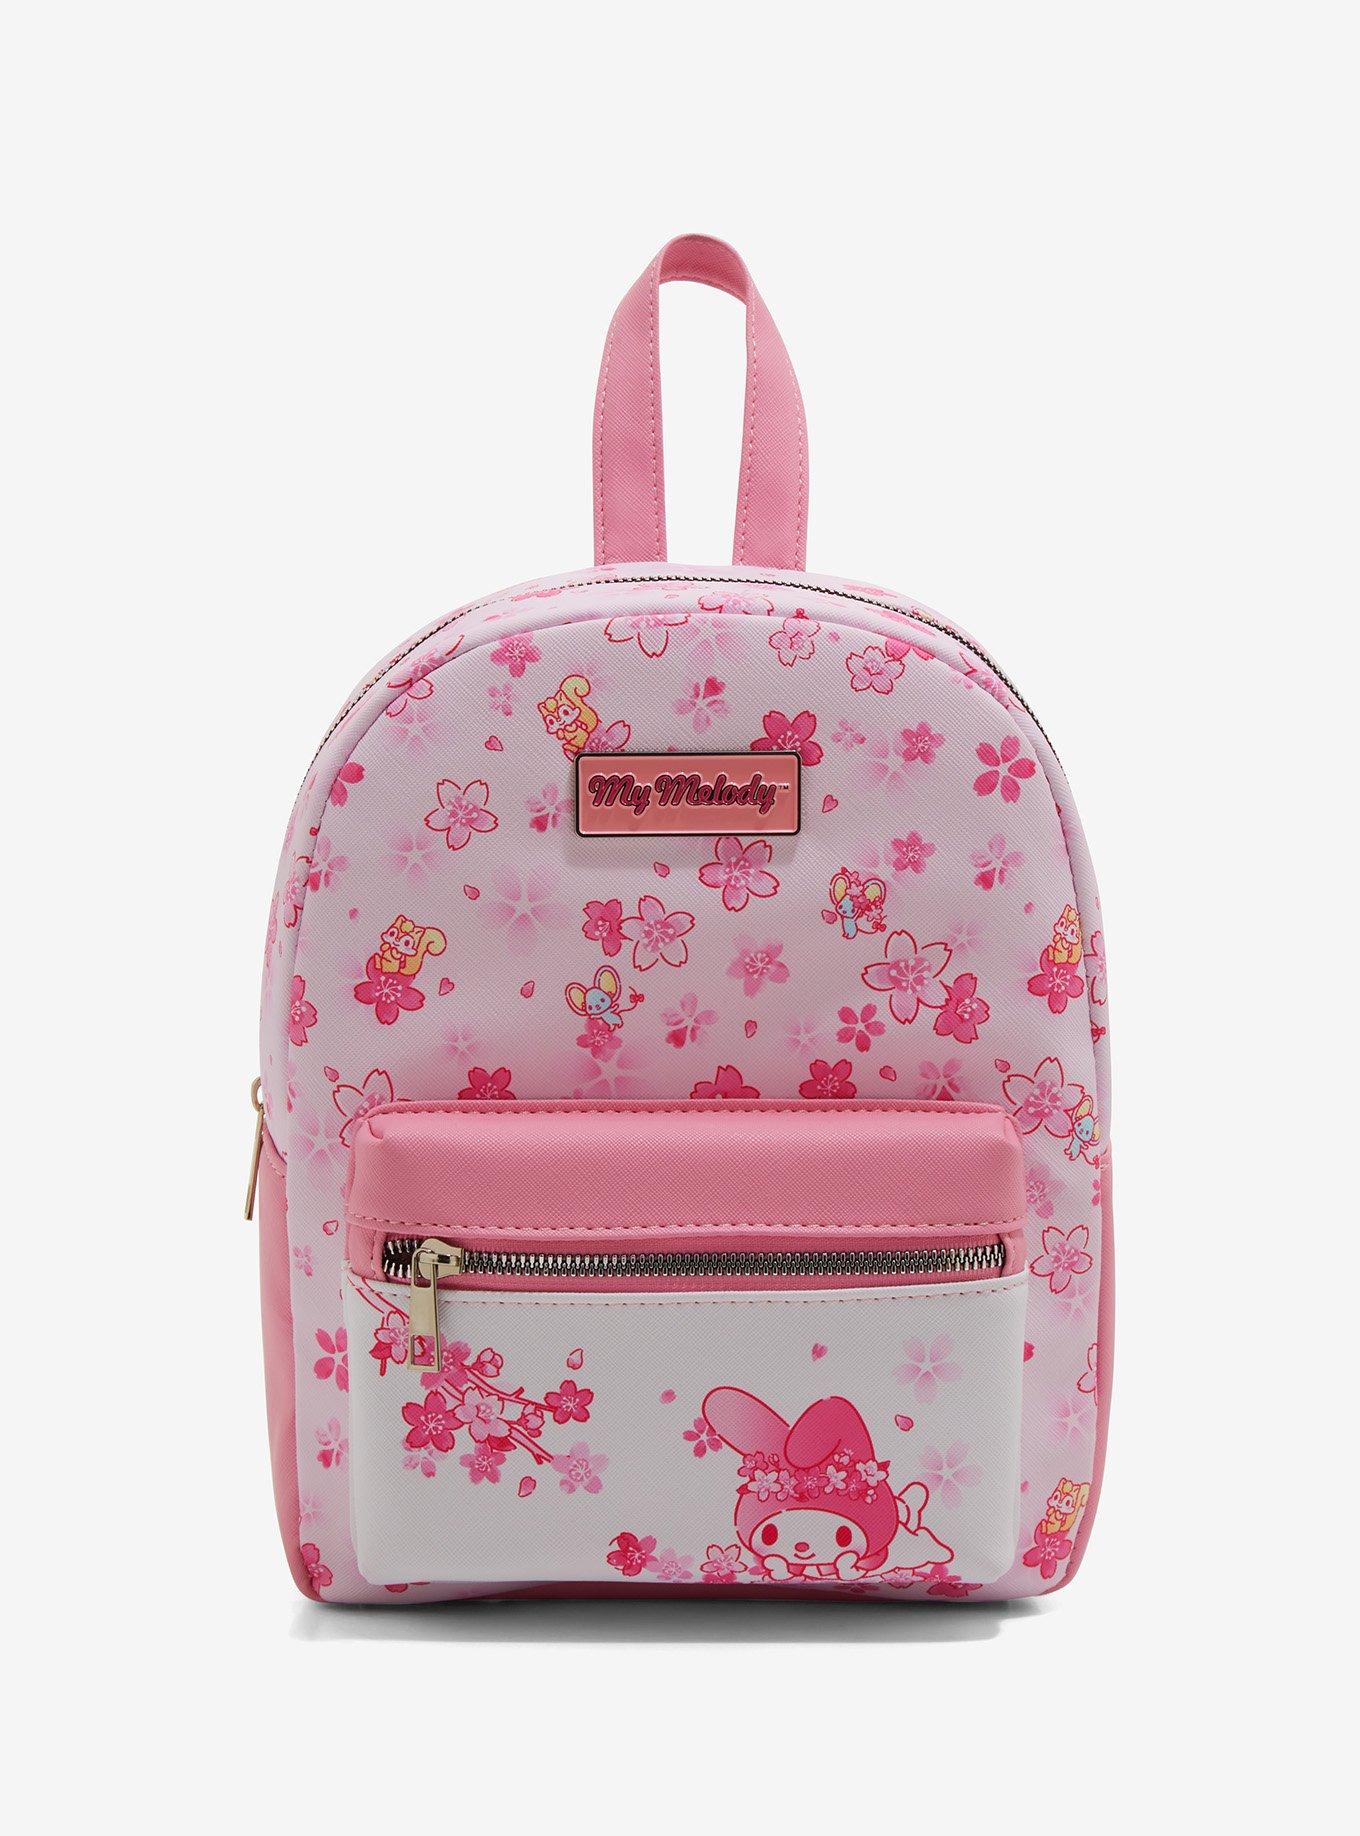 Animal Crossing Sakura Shoulder Bag Women Girl Kid Bag Game Pink Cherry  Purse